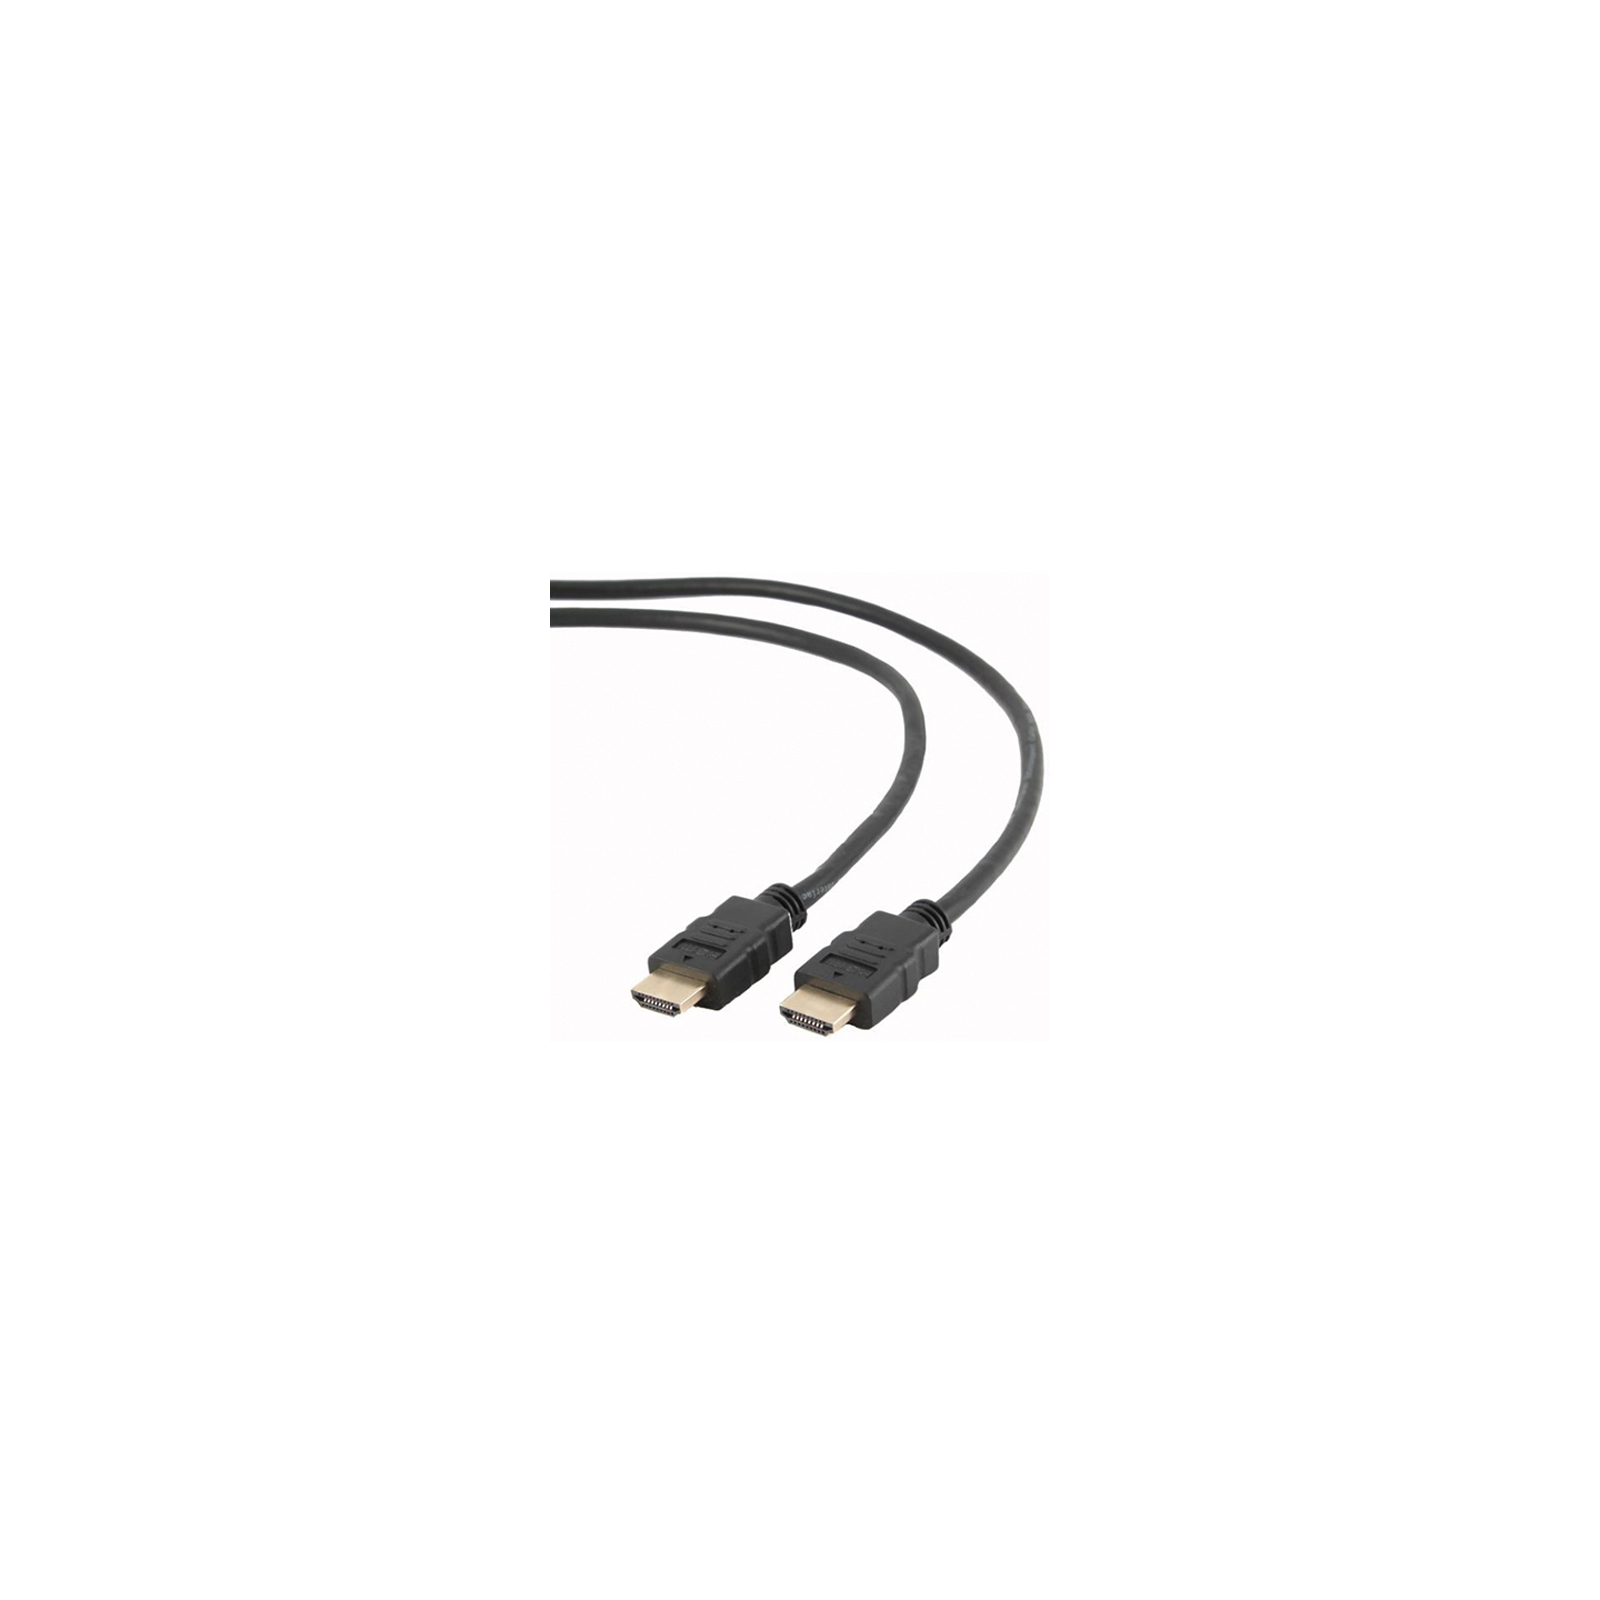 Кабель мультимедийный HDMI to HDMI 4.5m Cablexpert (CC-HDMI4-15)